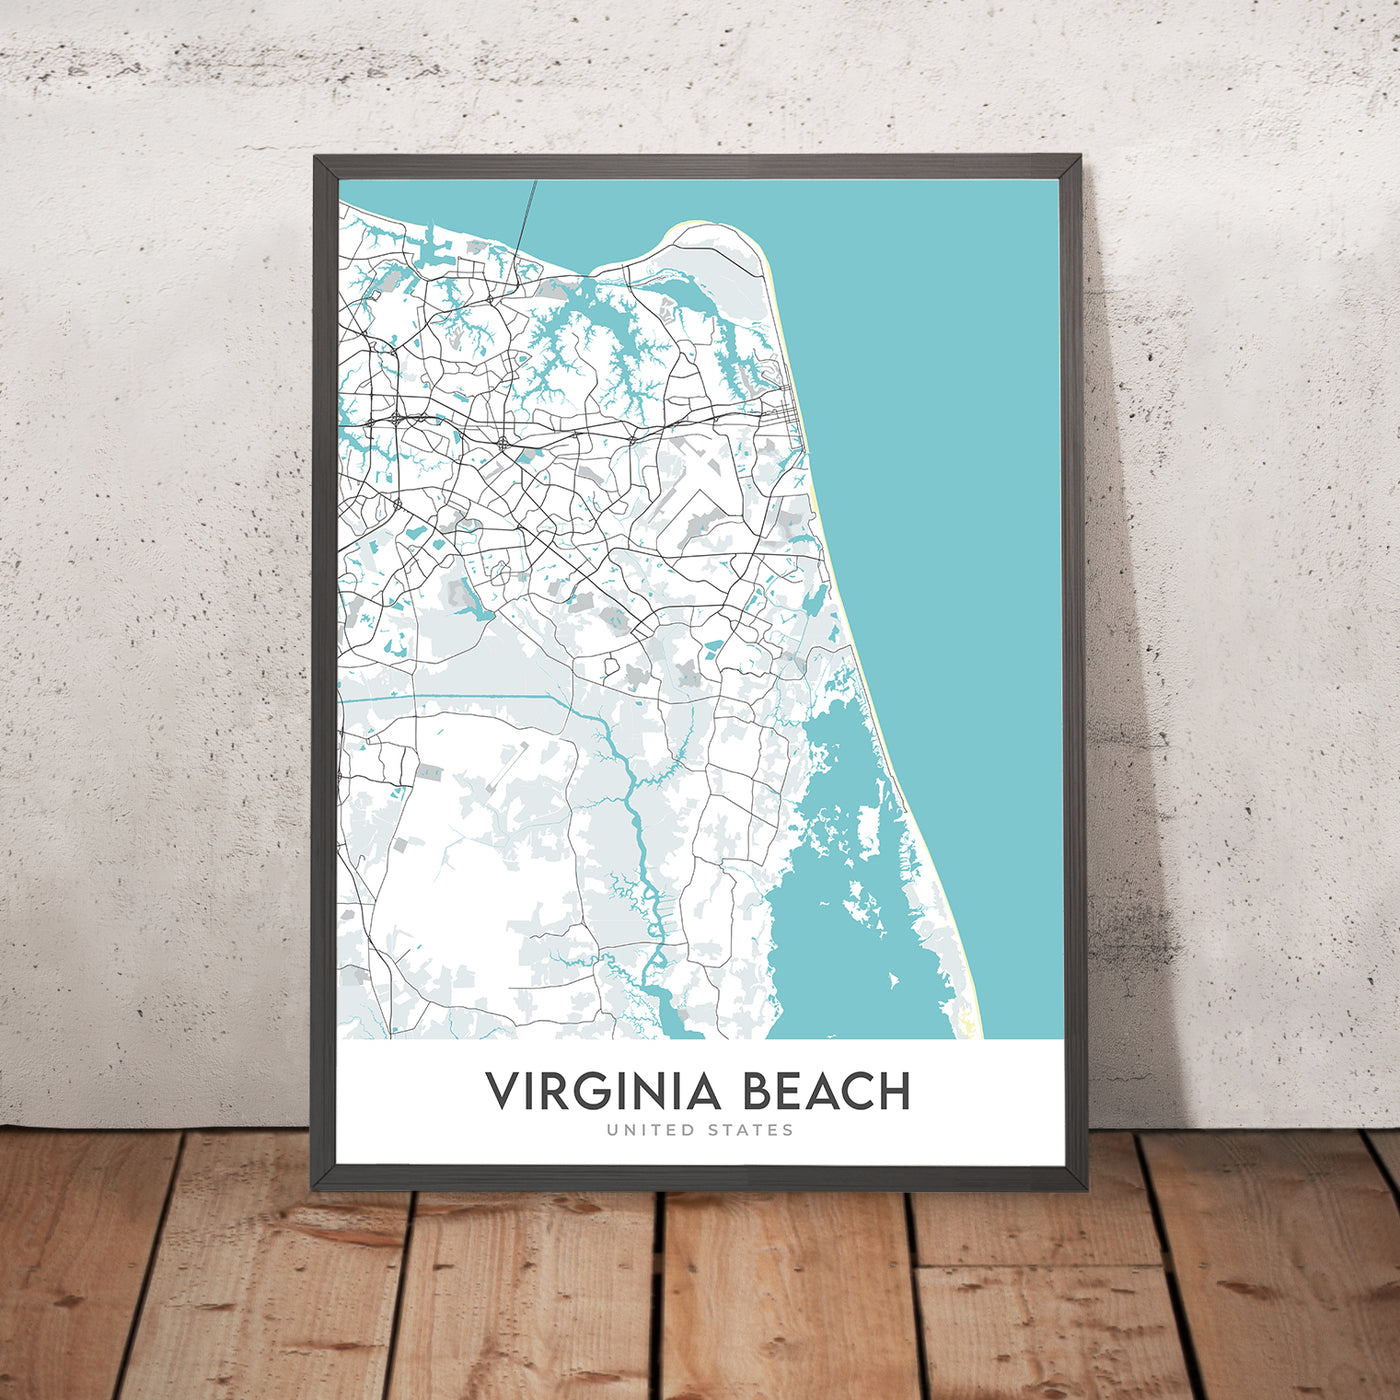 Mapa moderno de la ciudad de Virginia Beach, VA: Acuario de Virginia, Faro de Cape Henry, Paseo marítimo de Virginia Beach, Pembroke Manor, Chic's Beach